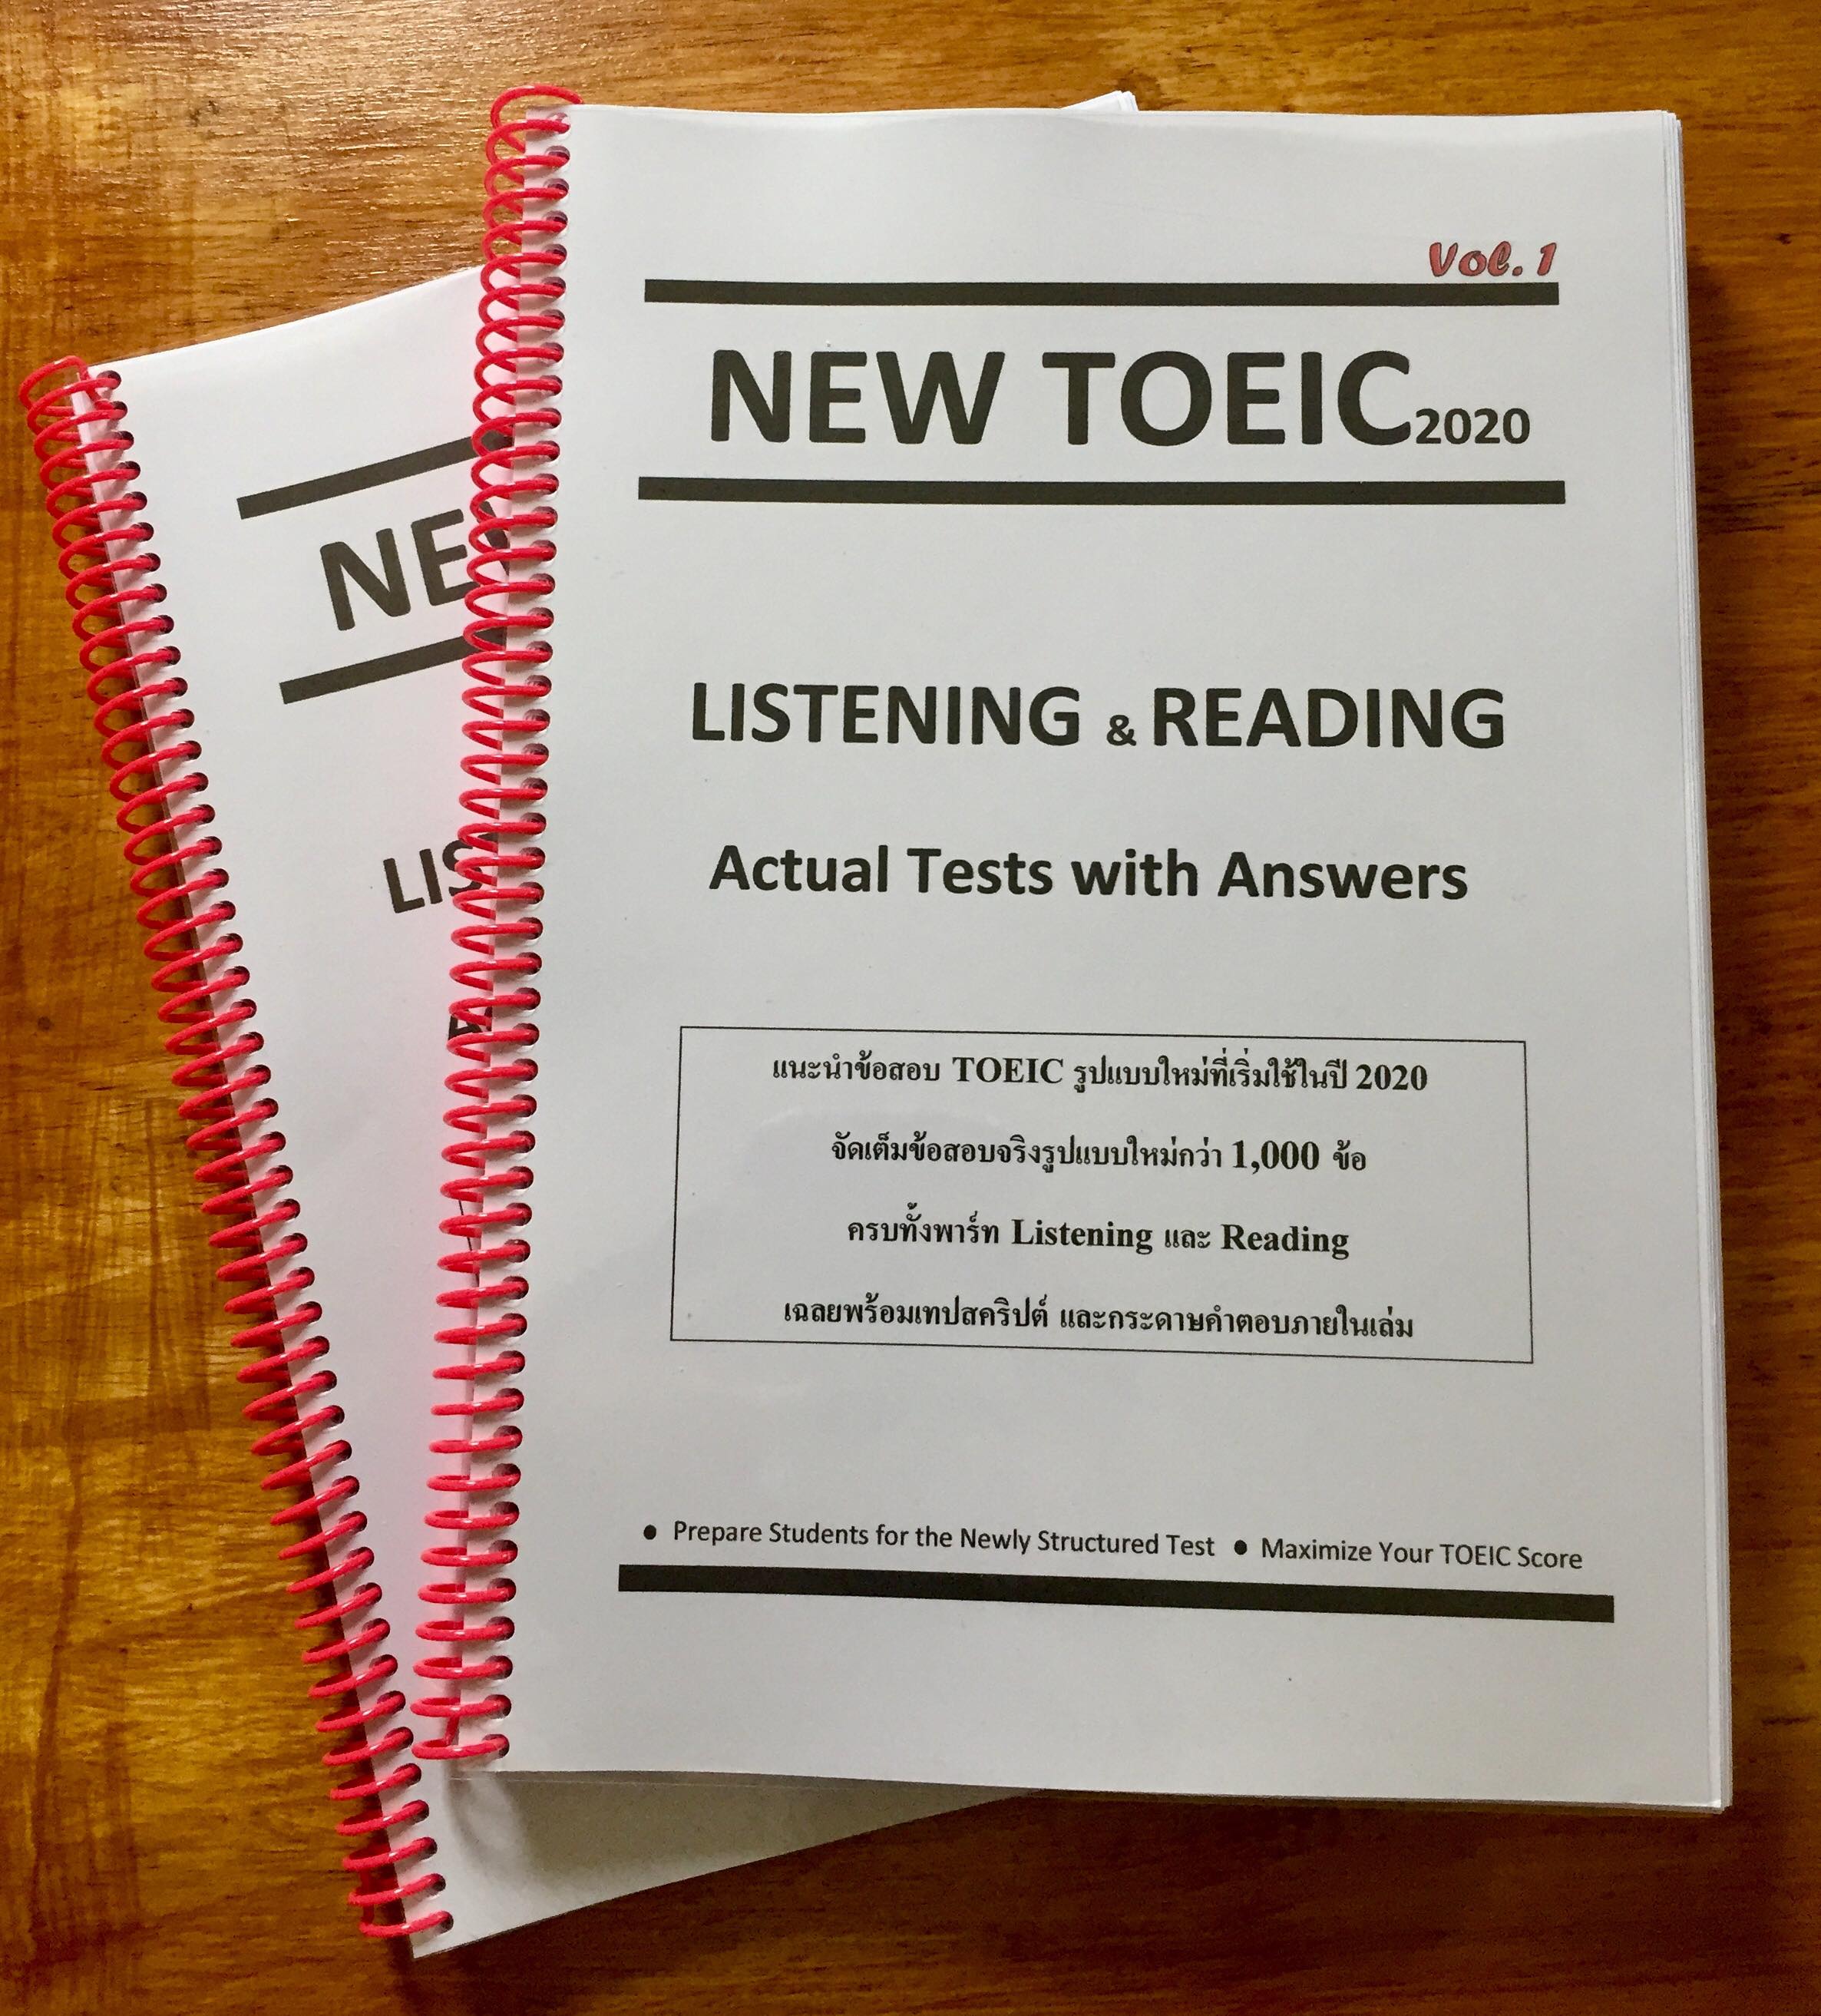 หนังสือข้อสอบ New TOEIC 2020 (Vol.1) ข้อสอบ TOEIC รูปแบบใหม่